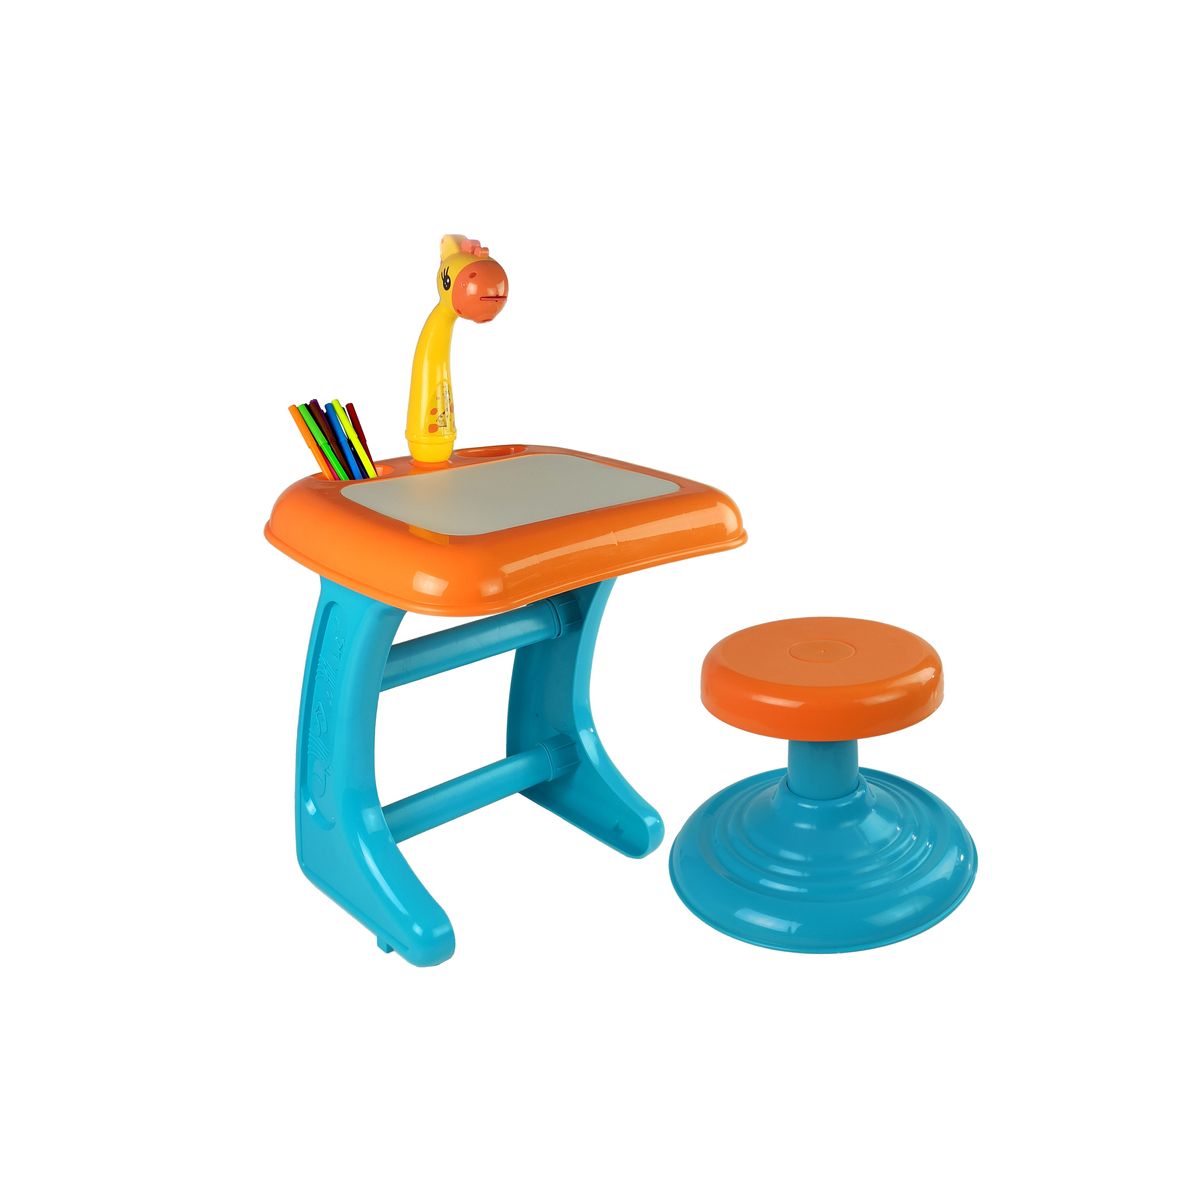 Zestaw kreatywny dla dzieci Stolik Tablica Do Rysowania Krzesełko Projektor Pomarańczowy Pisaki Obrazki Lean (9498)